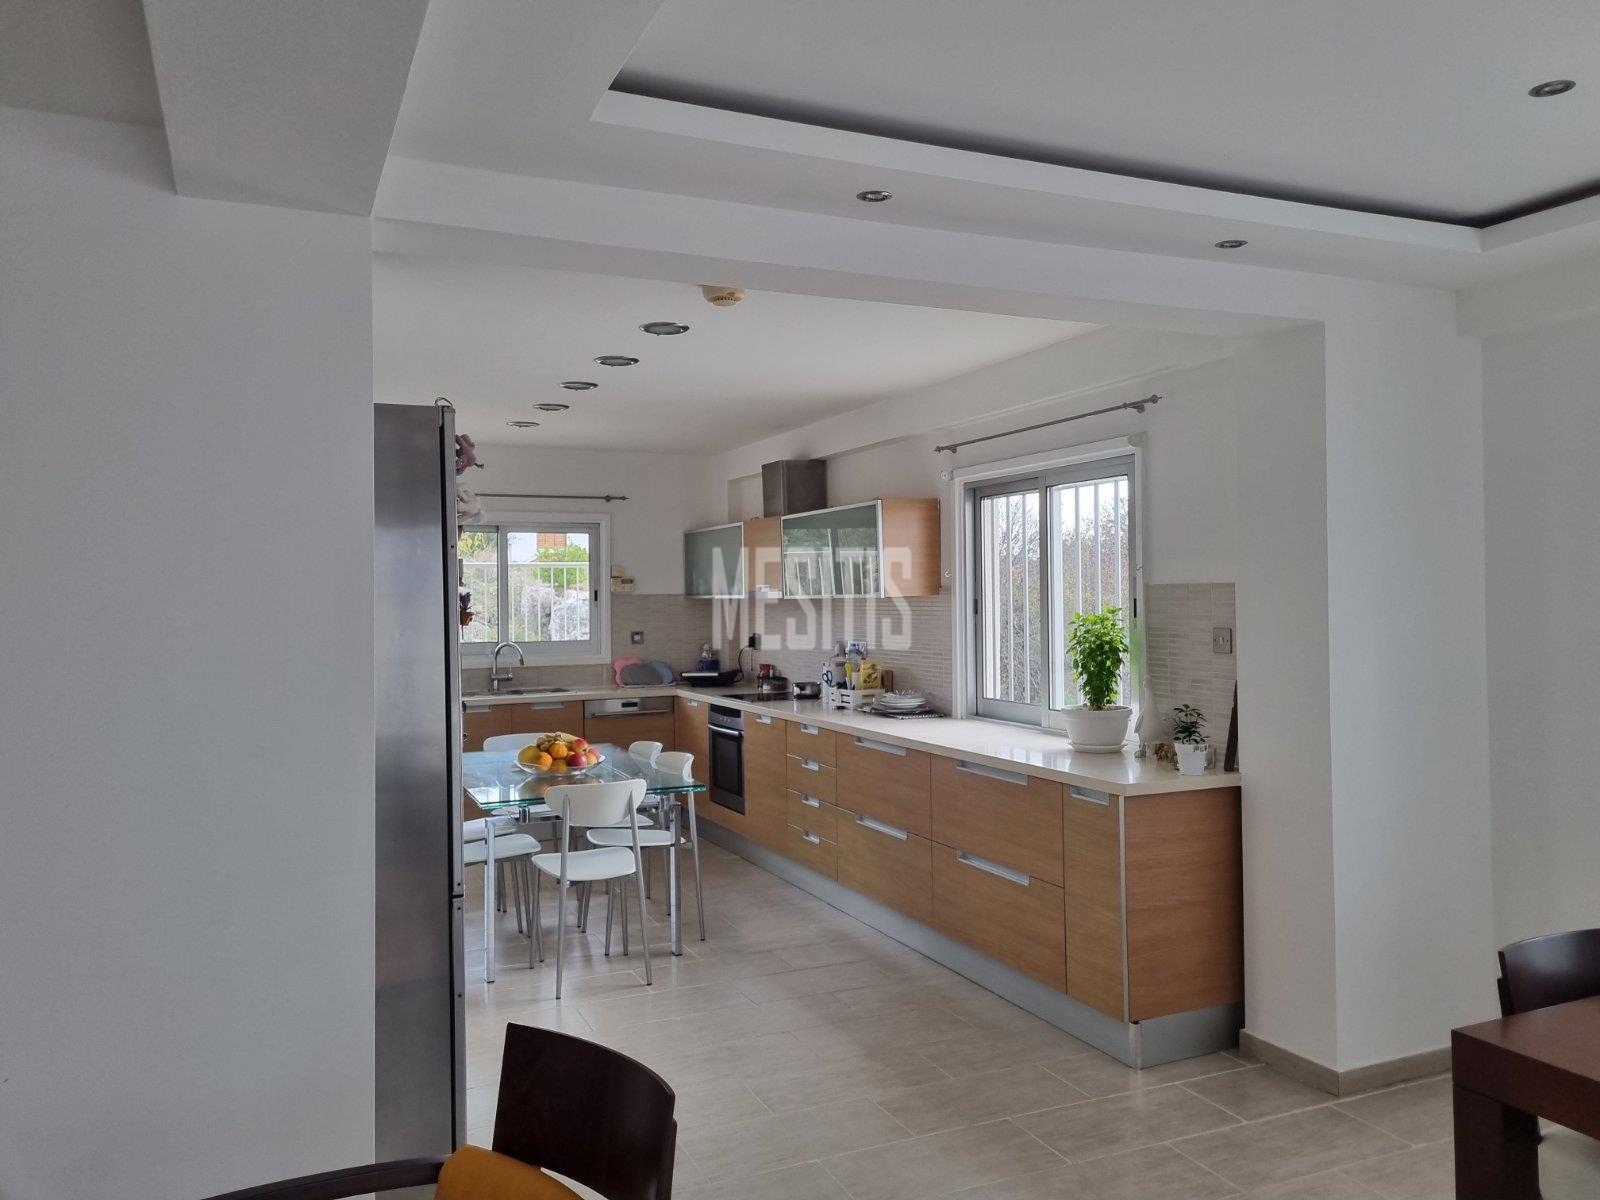 3 Βedroom Τop Floor Apartment For Sale In A Prime Location With Large Spaces And Incredible Aesthetics Αnd Views To All Of Nicosia #30861-6